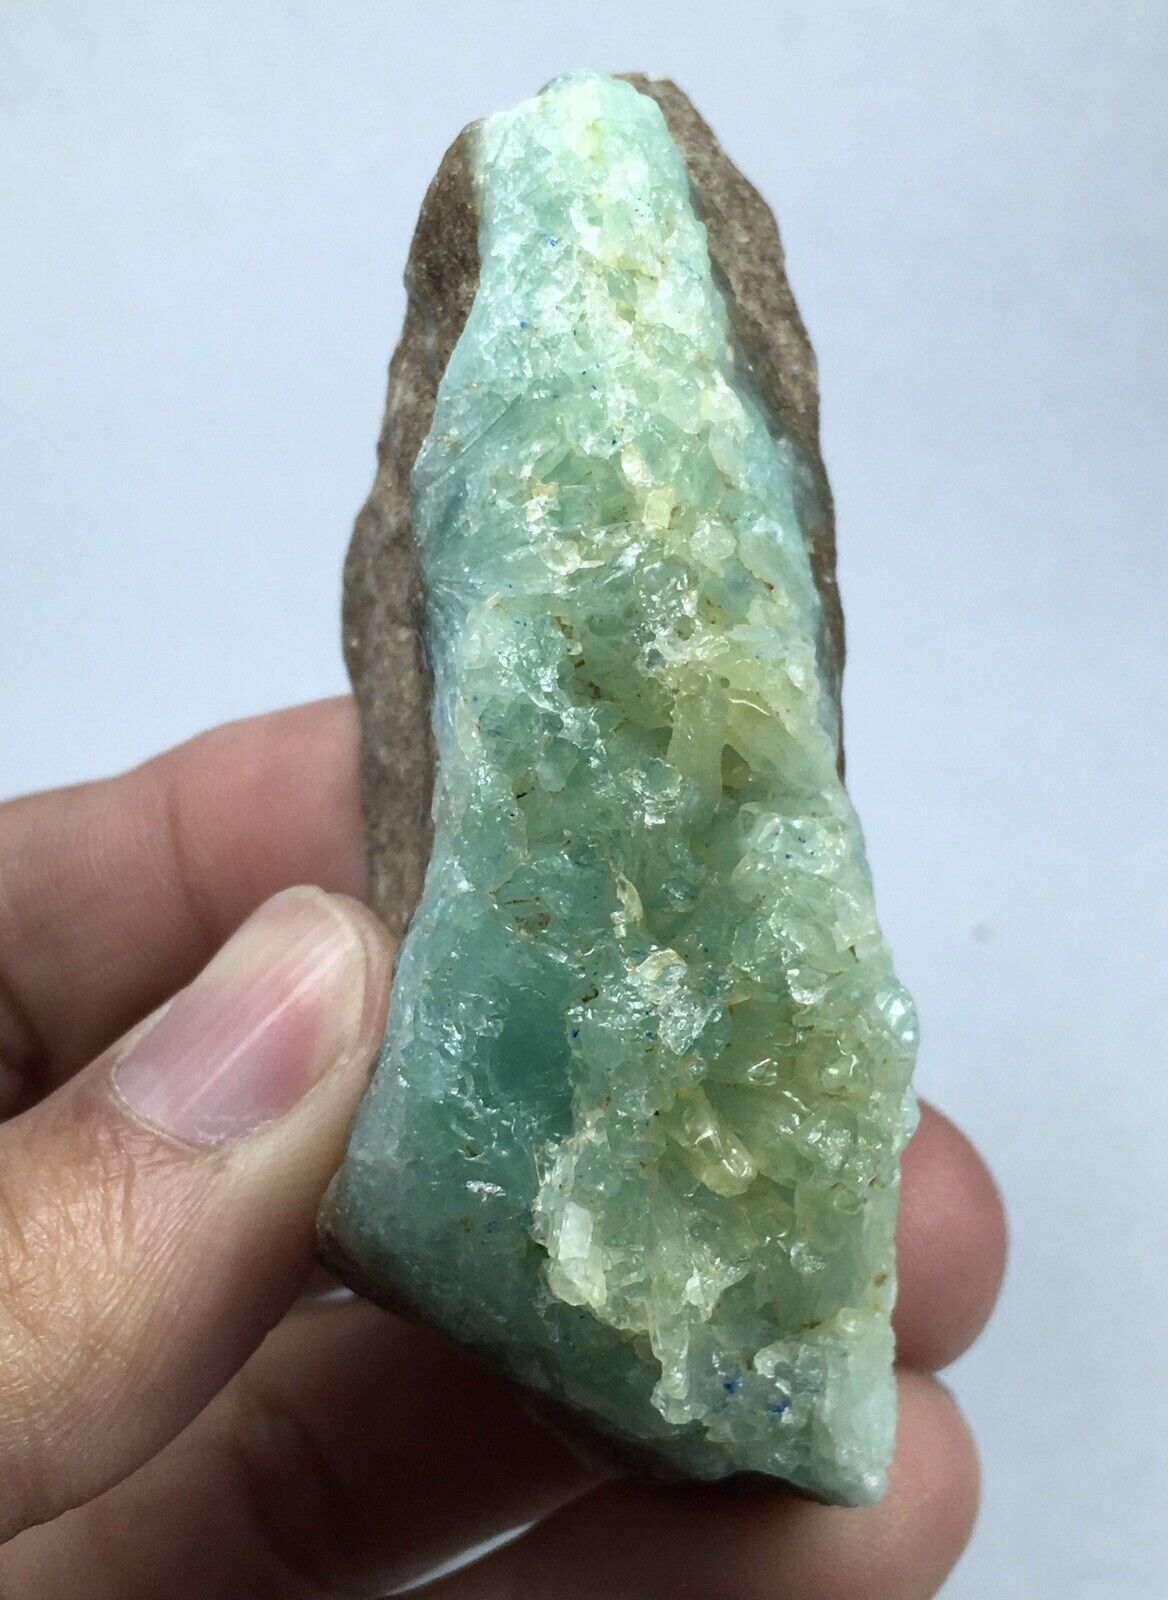 Bluish Green Aragonite crystal on matrix